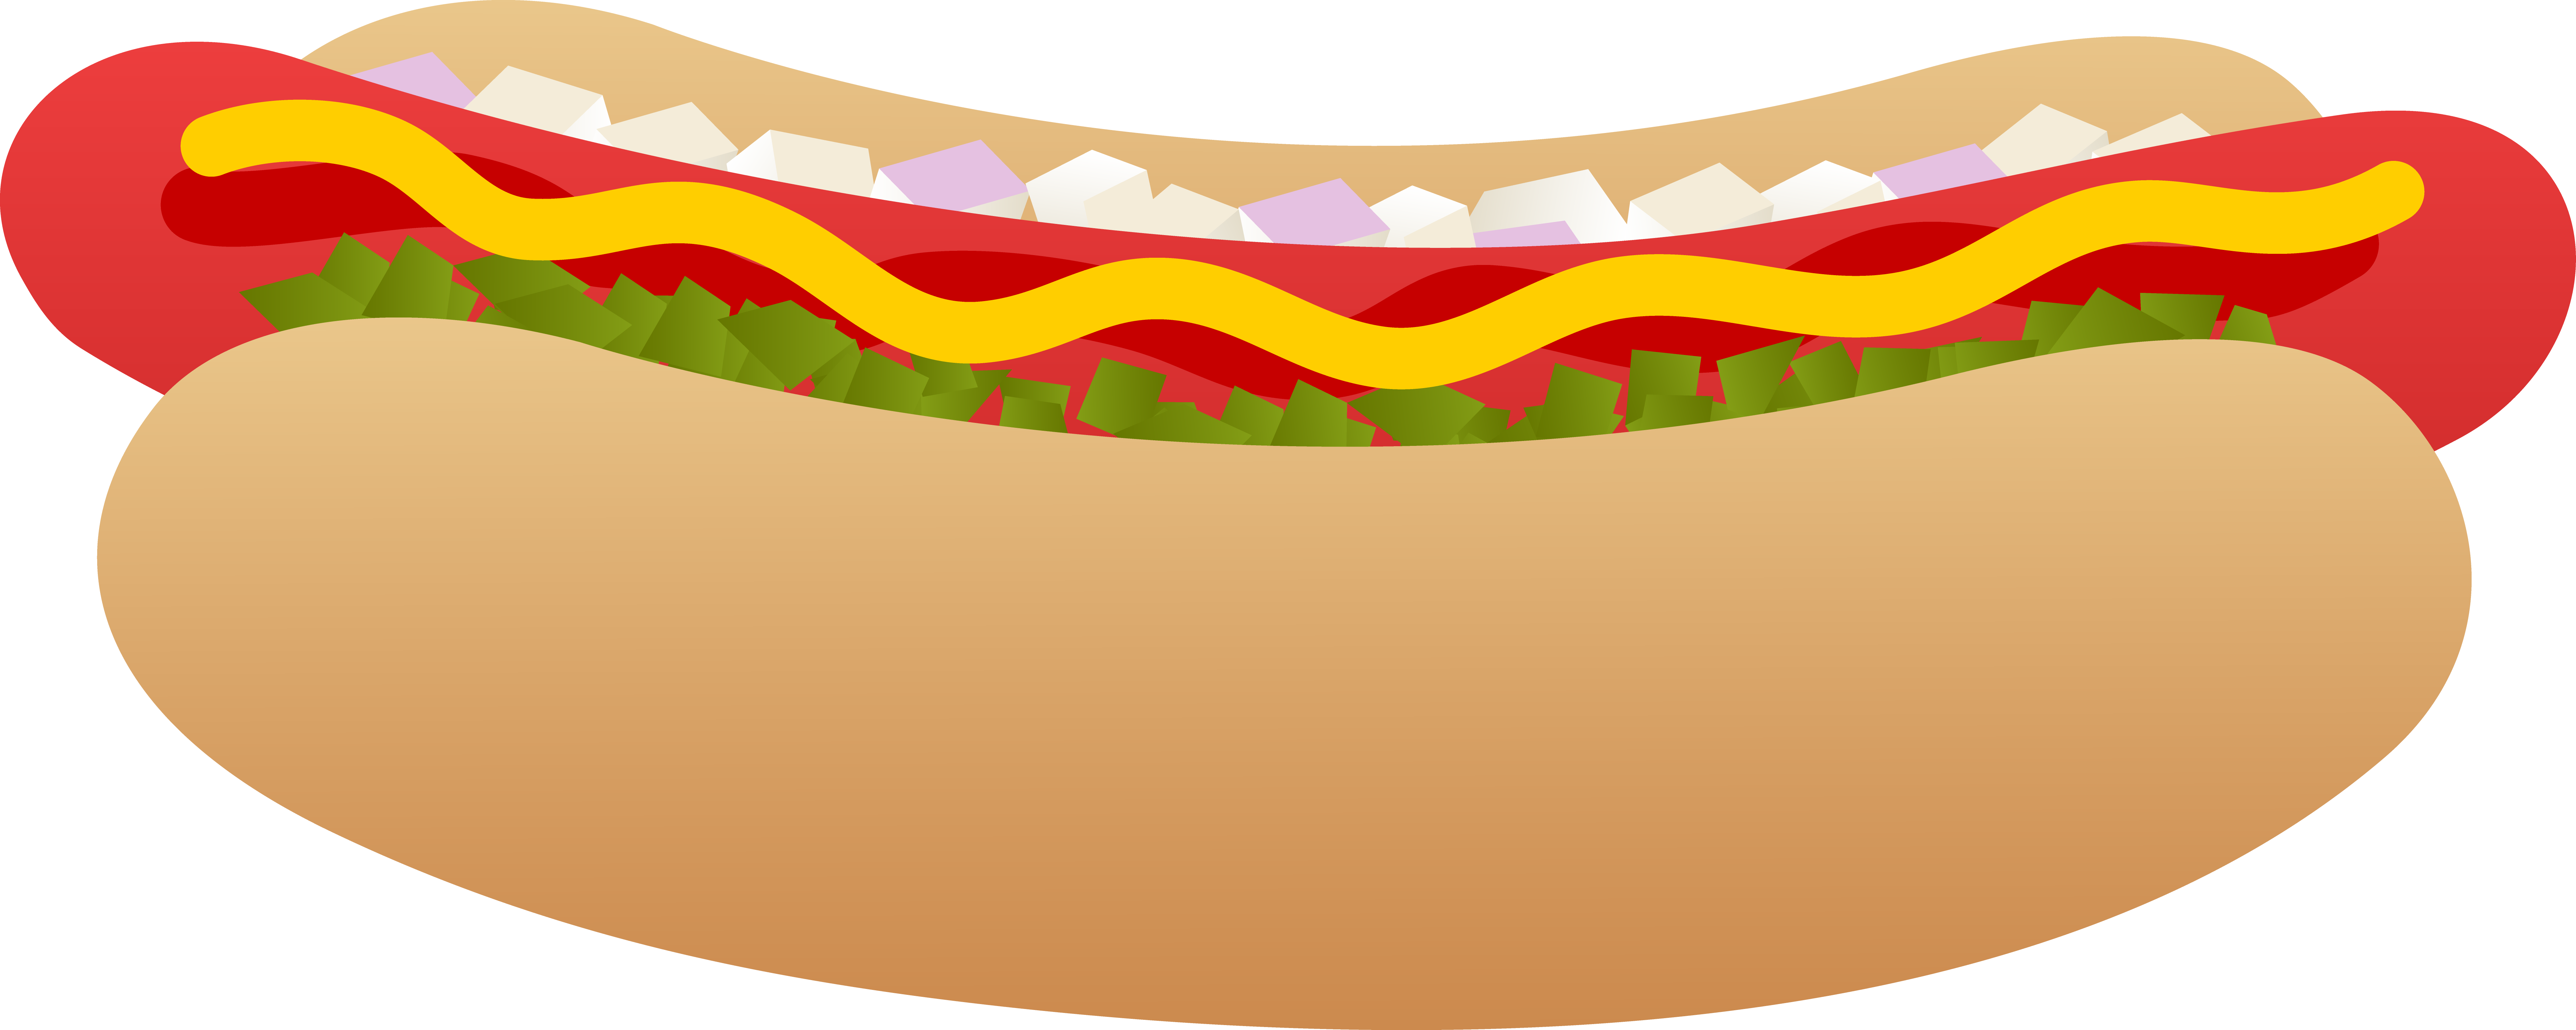 Hot Dog on a Bun - Free Clip Art